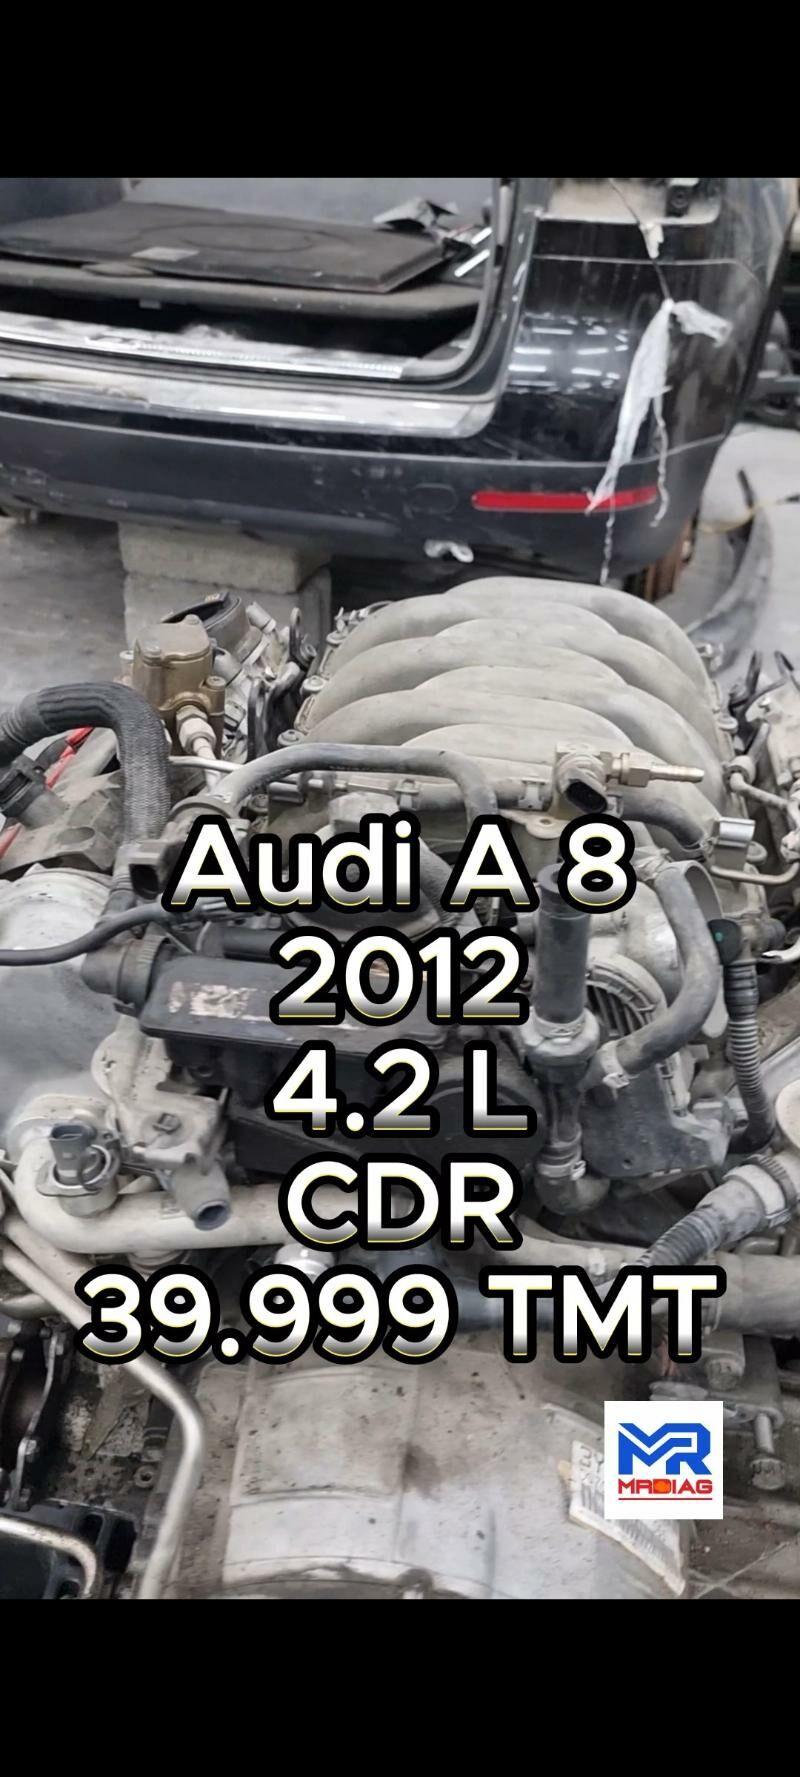 Моторы BMW,Audi,VW 13 999 TMT - 6 mkr - img 2